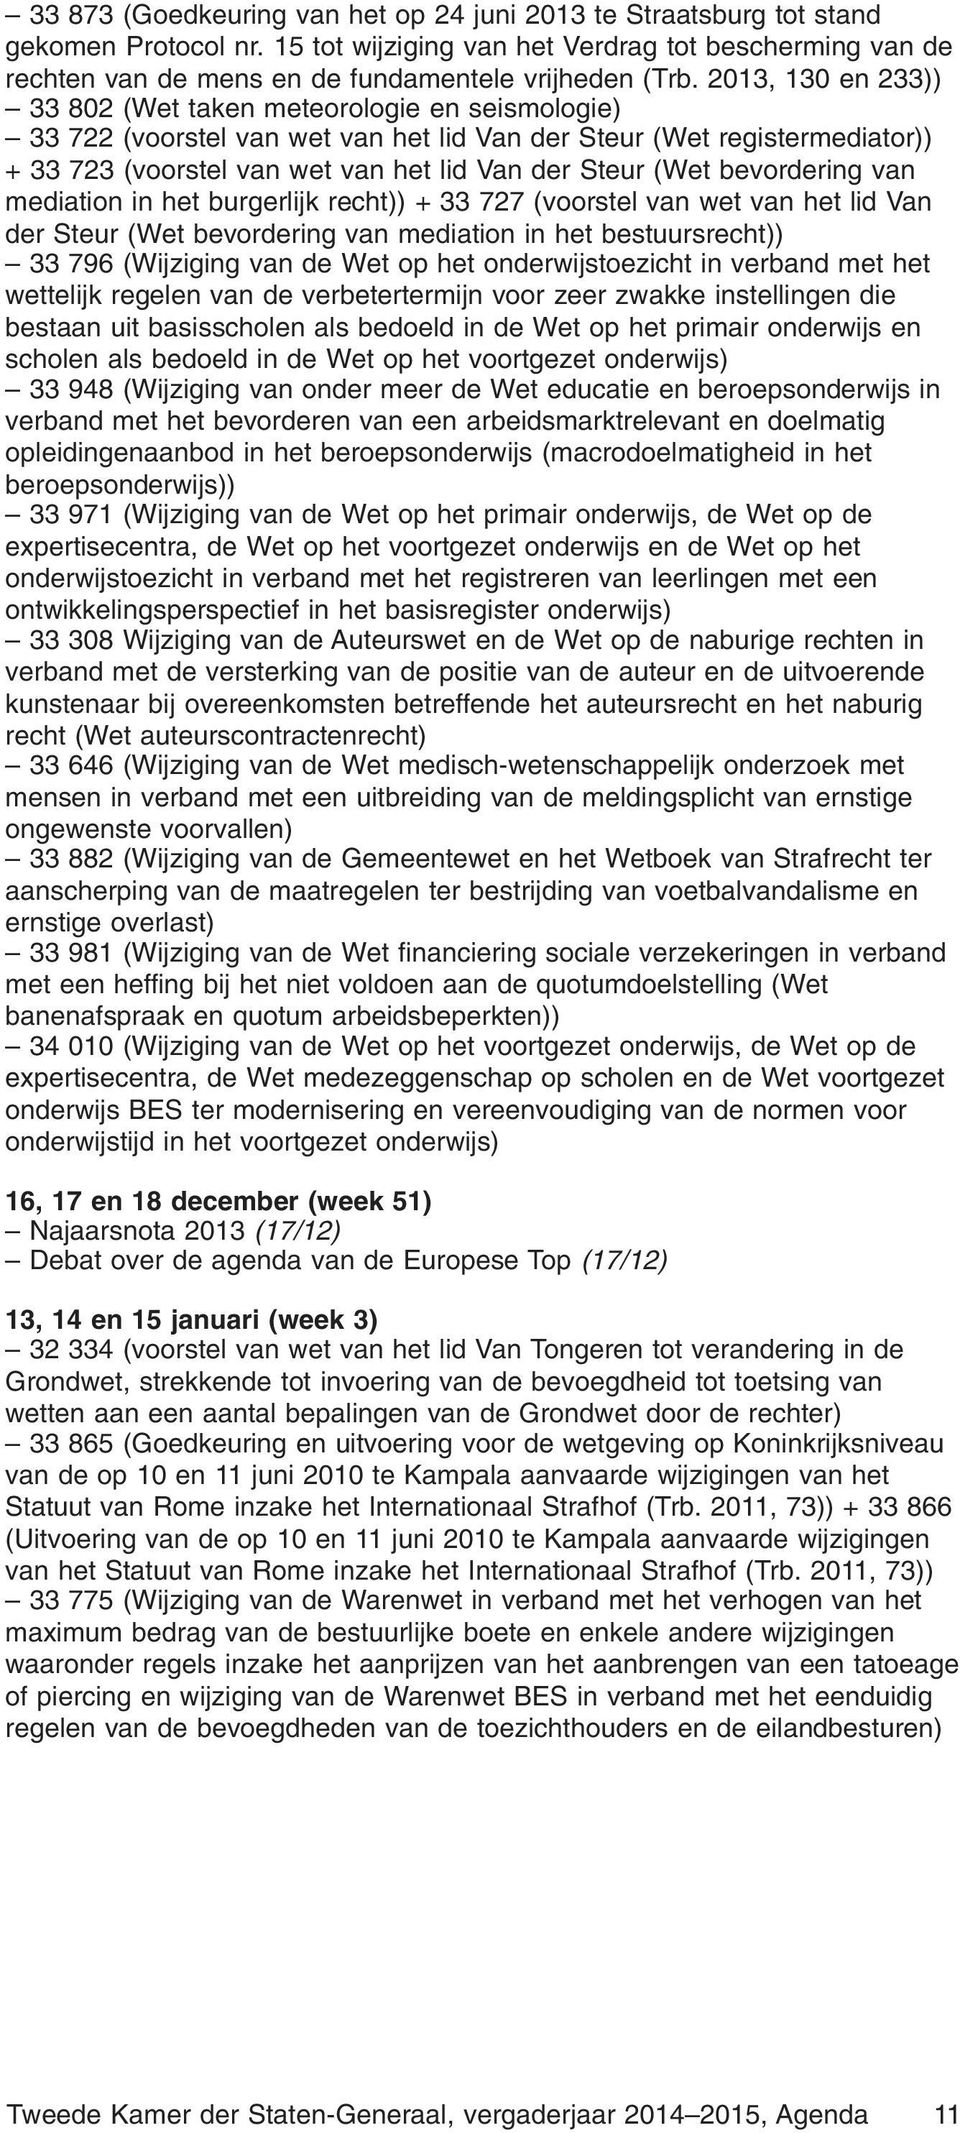 bevordering van mediation in het burgerlijk recht)) + 33 727 (voorstel van wet van het lid Van der Steur (Wet bevordering van mediation in het bestuursrecht)) 33 796 (Wijziging van de Wet op het